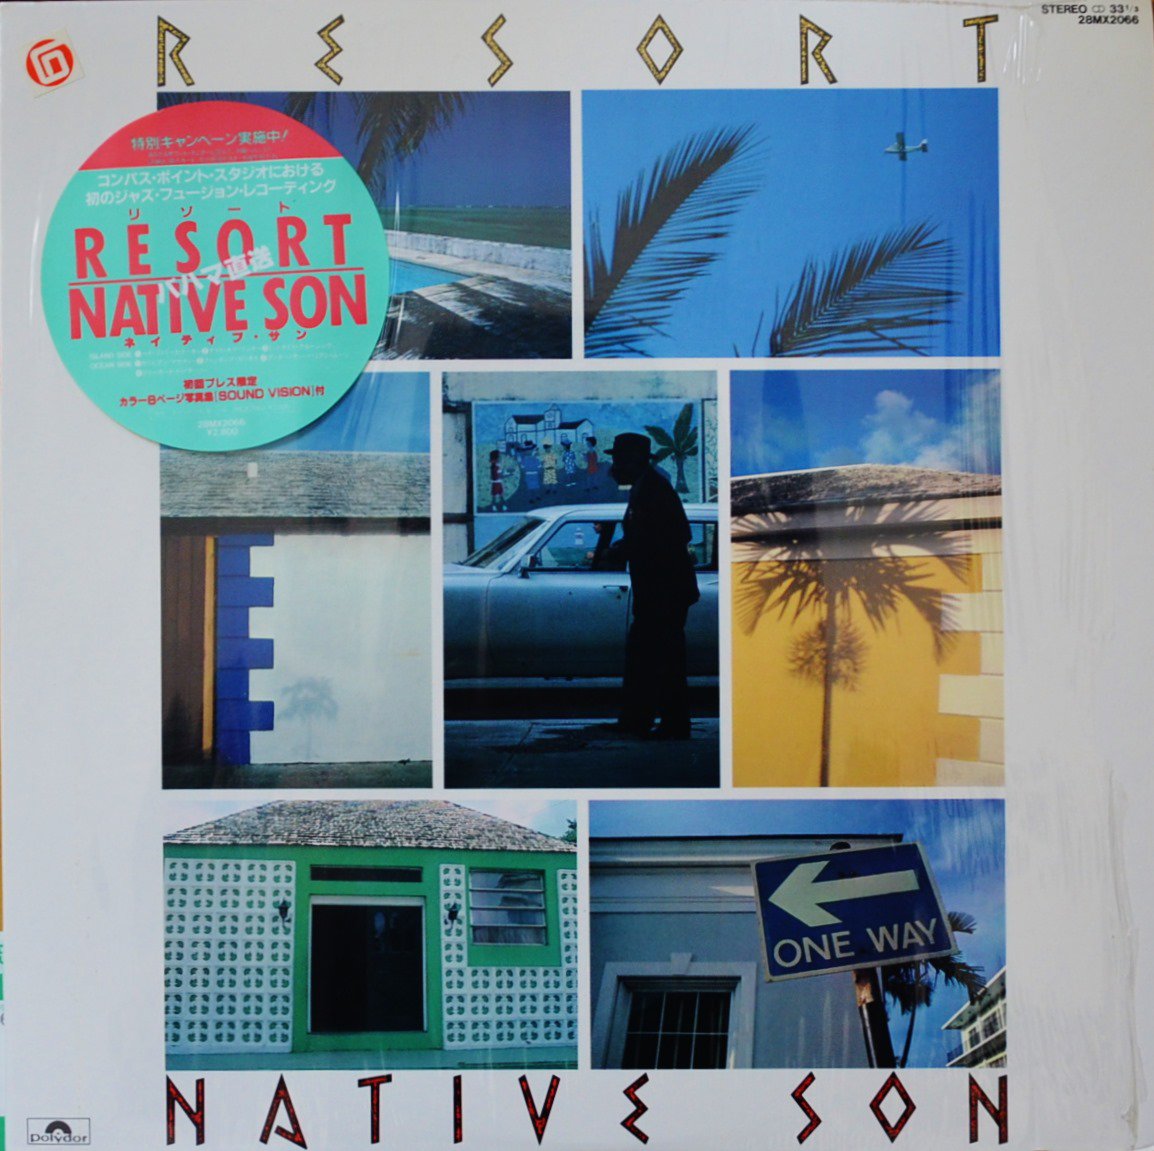 NATIVE SON ネイティブ・サン / リゾート RESORT (LP)